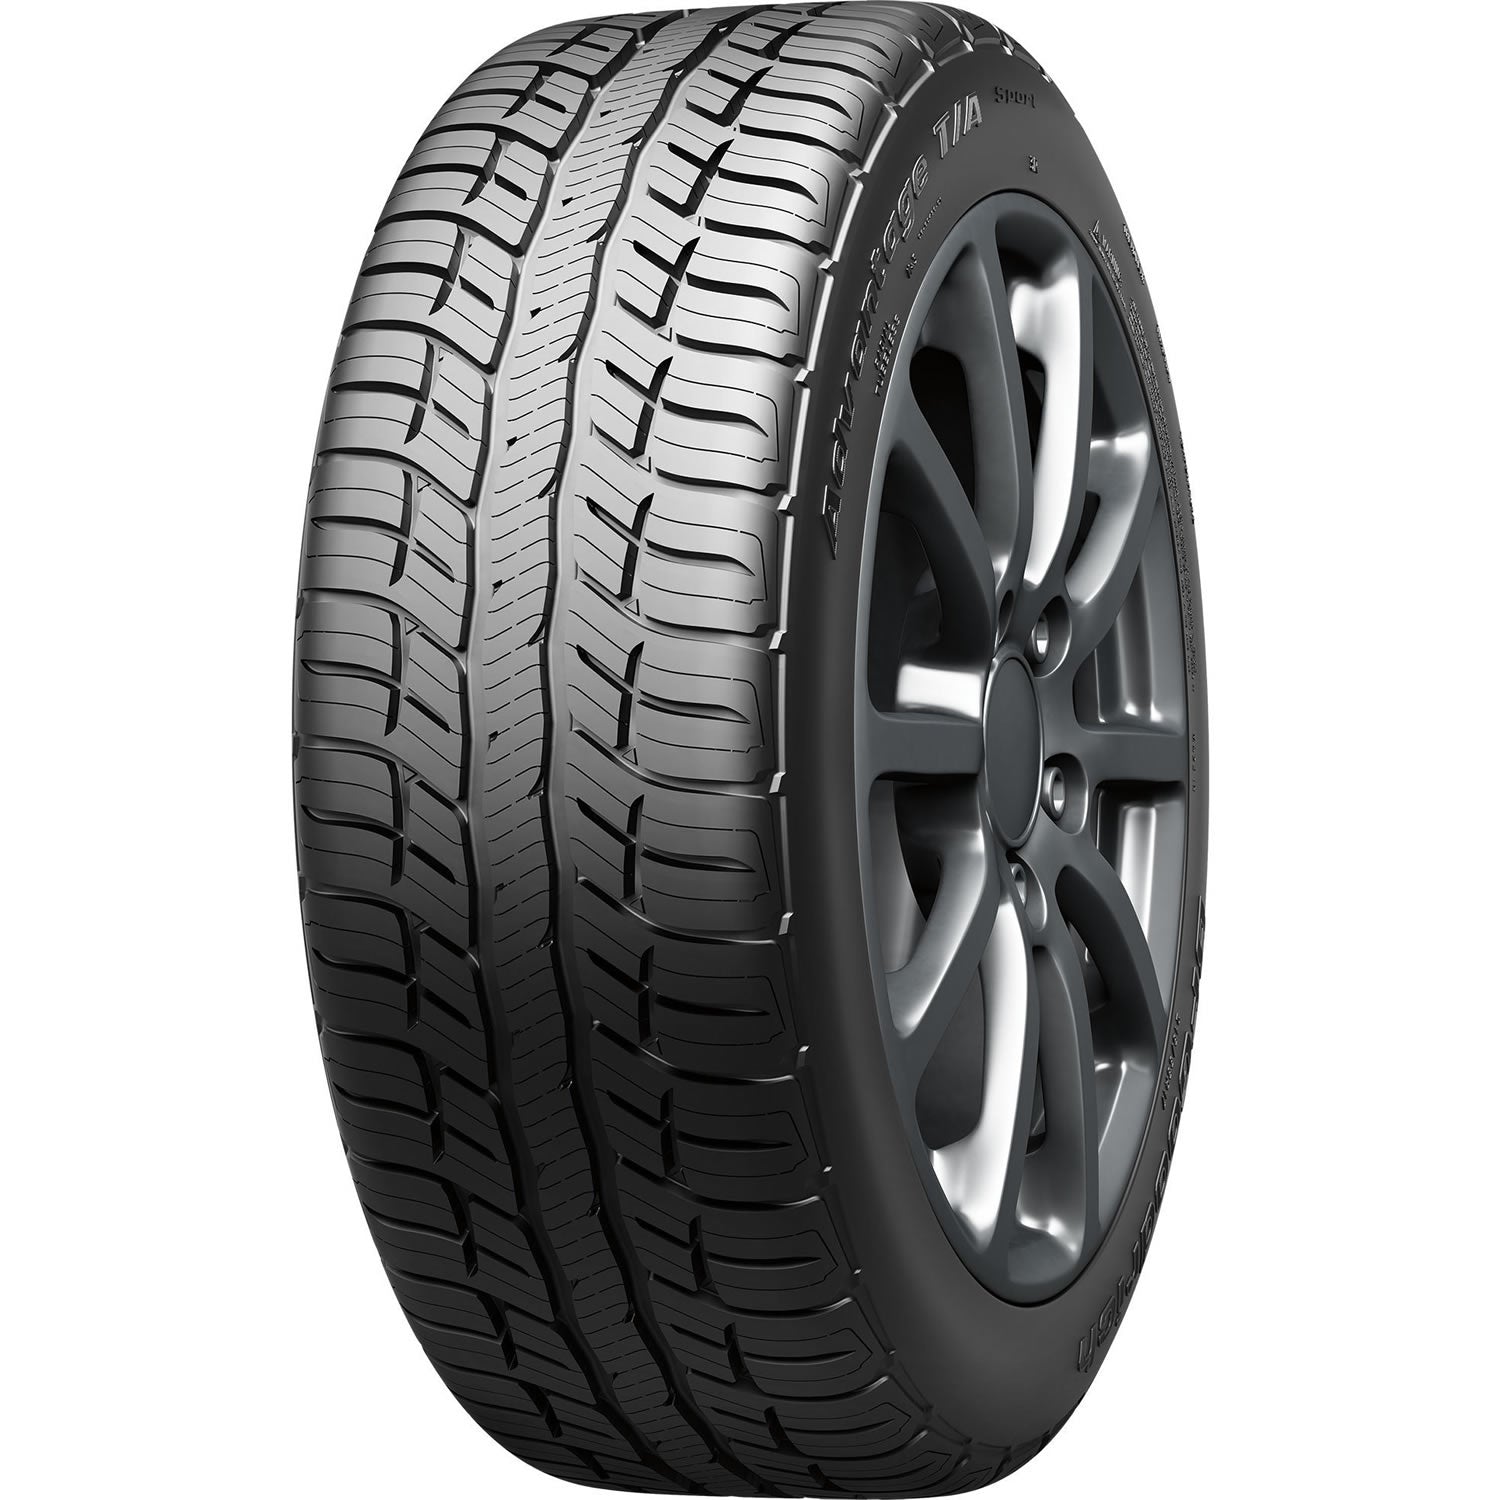 BFGOODRICH ADVANTAGE T/A SPORT 255/65R17 (30.1X10R 17) Tires